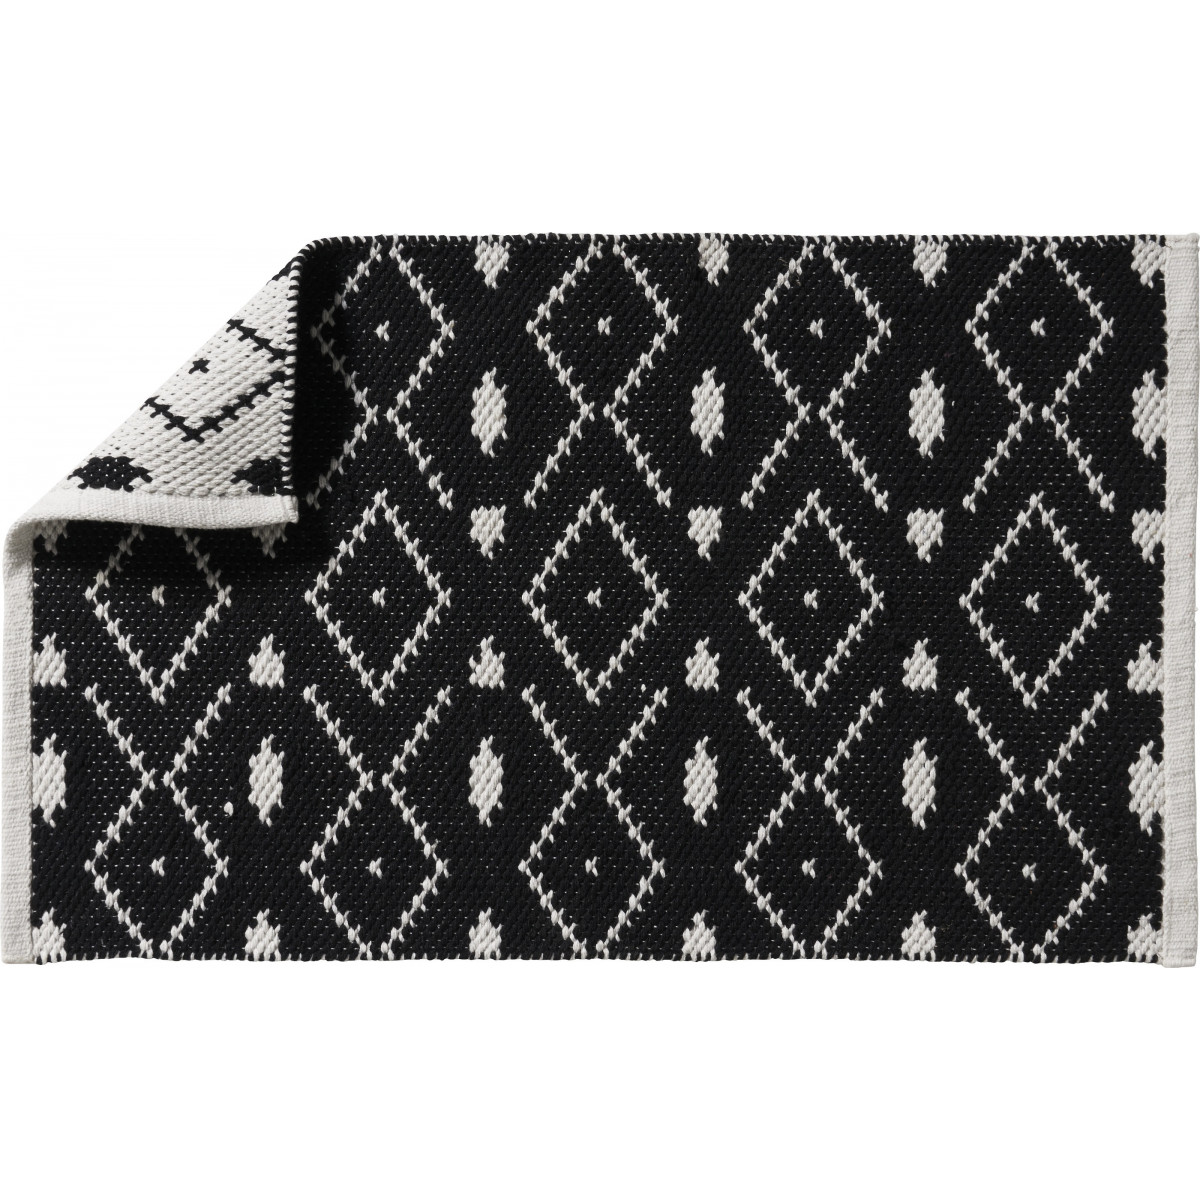 tapis de bain coton fantaisie noir et blanc 50x80cm